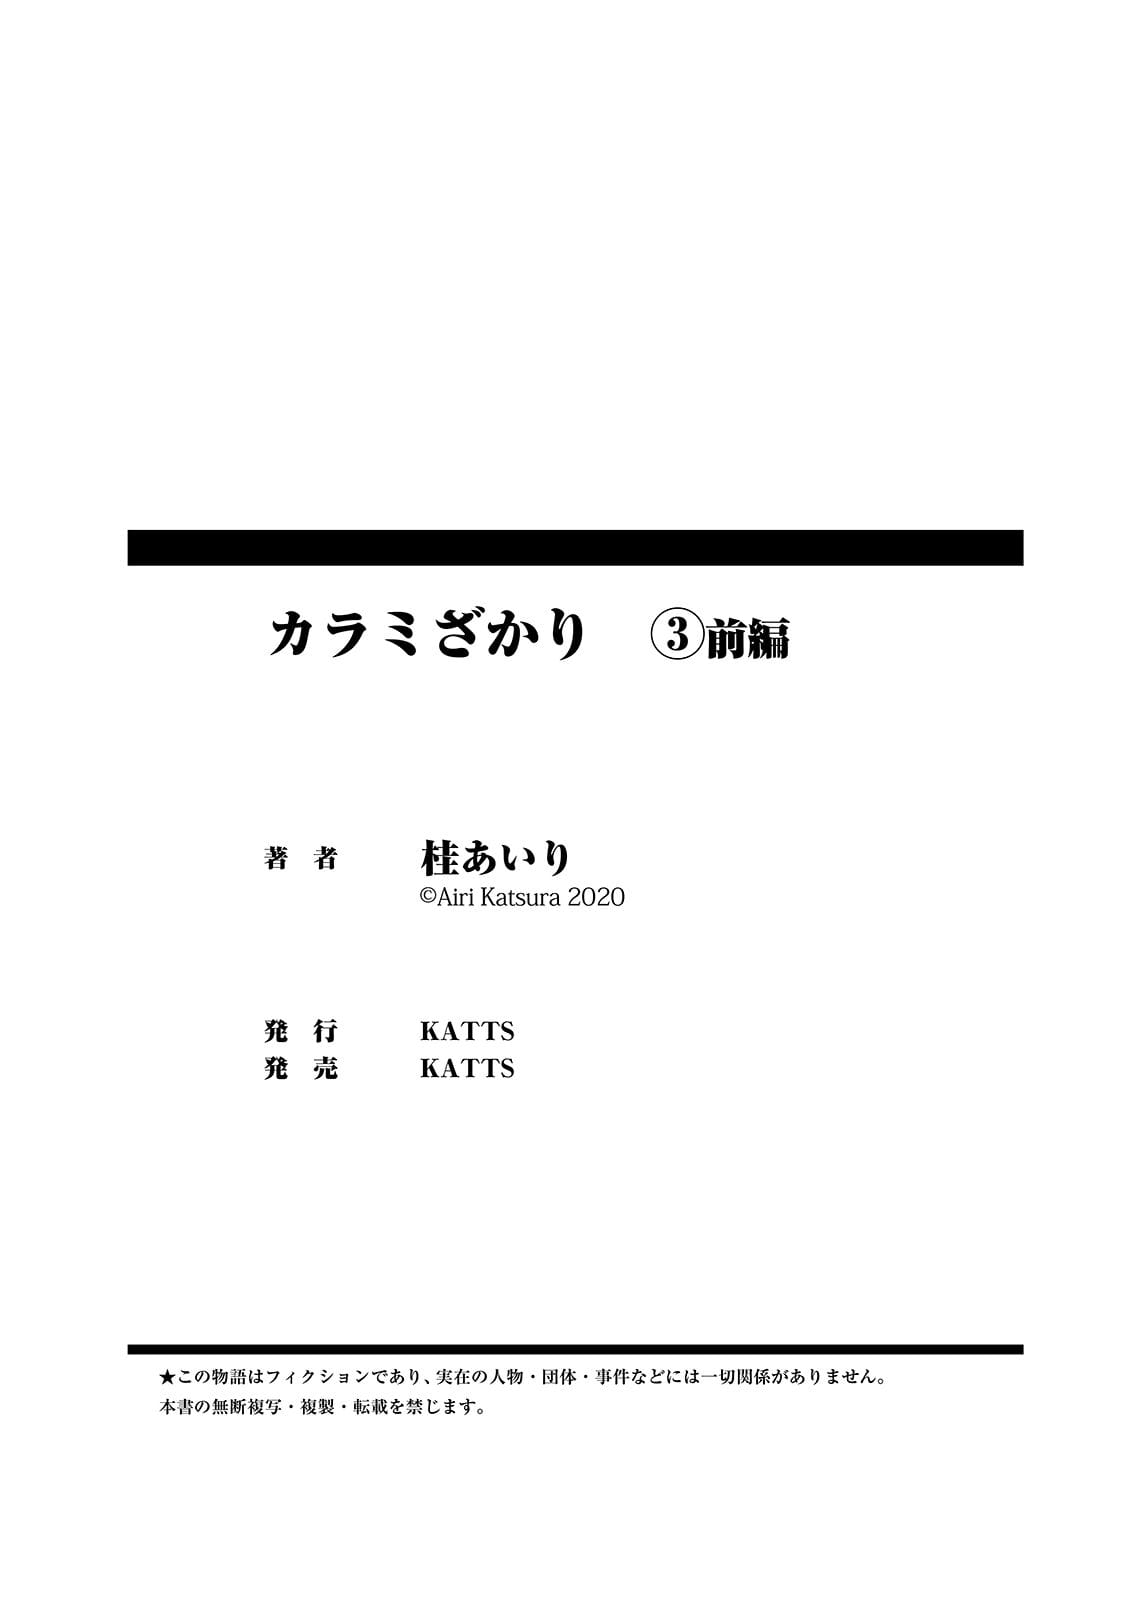 Katsura Giri karami zakari vol. 3 zenpen renklendirme PART 4